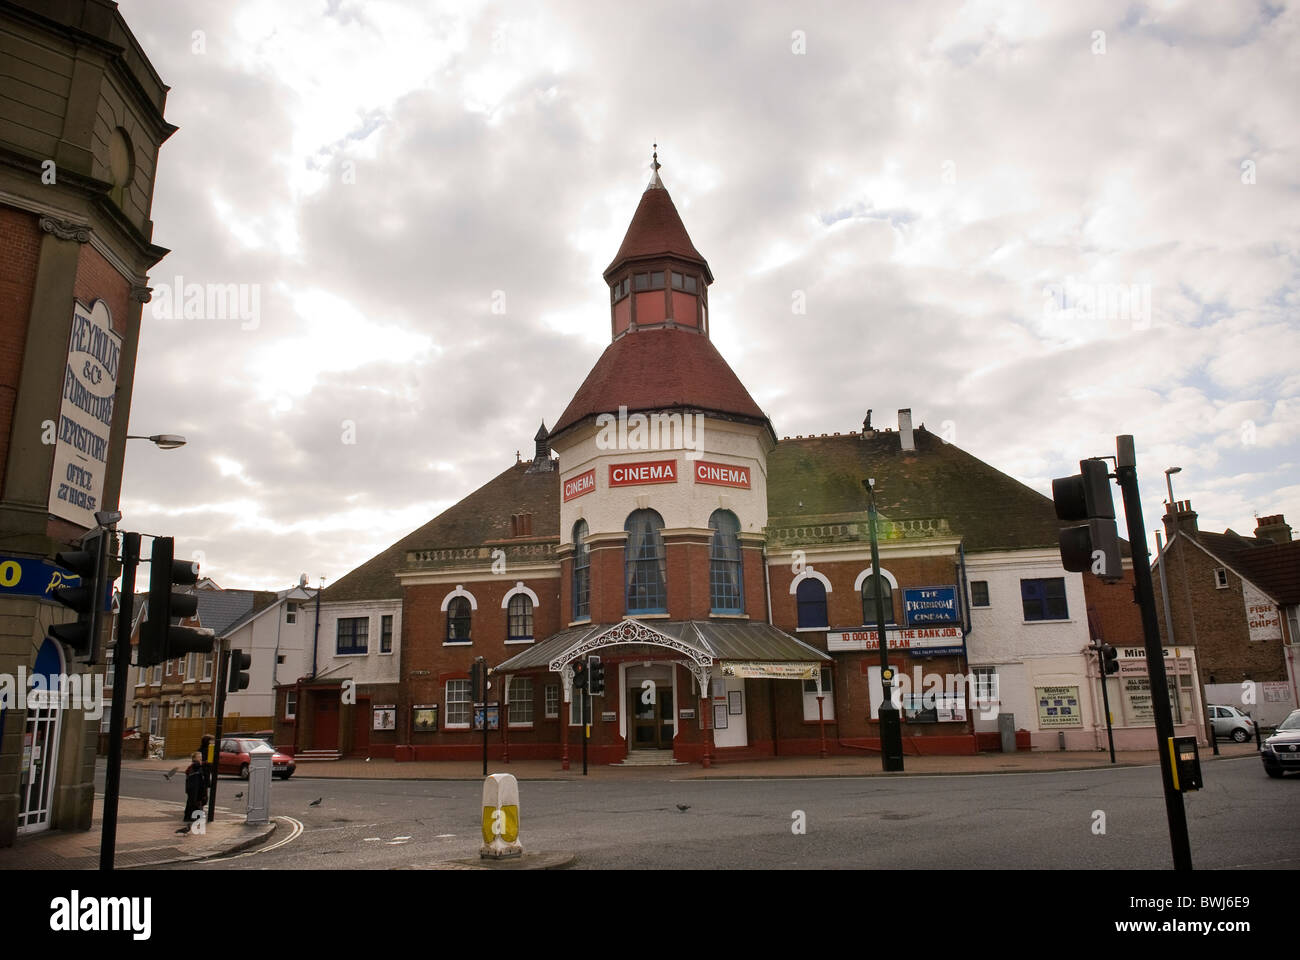 Le cinéma Picturedrome, Bognor Regis, West Sussex, UK Banque D'Images